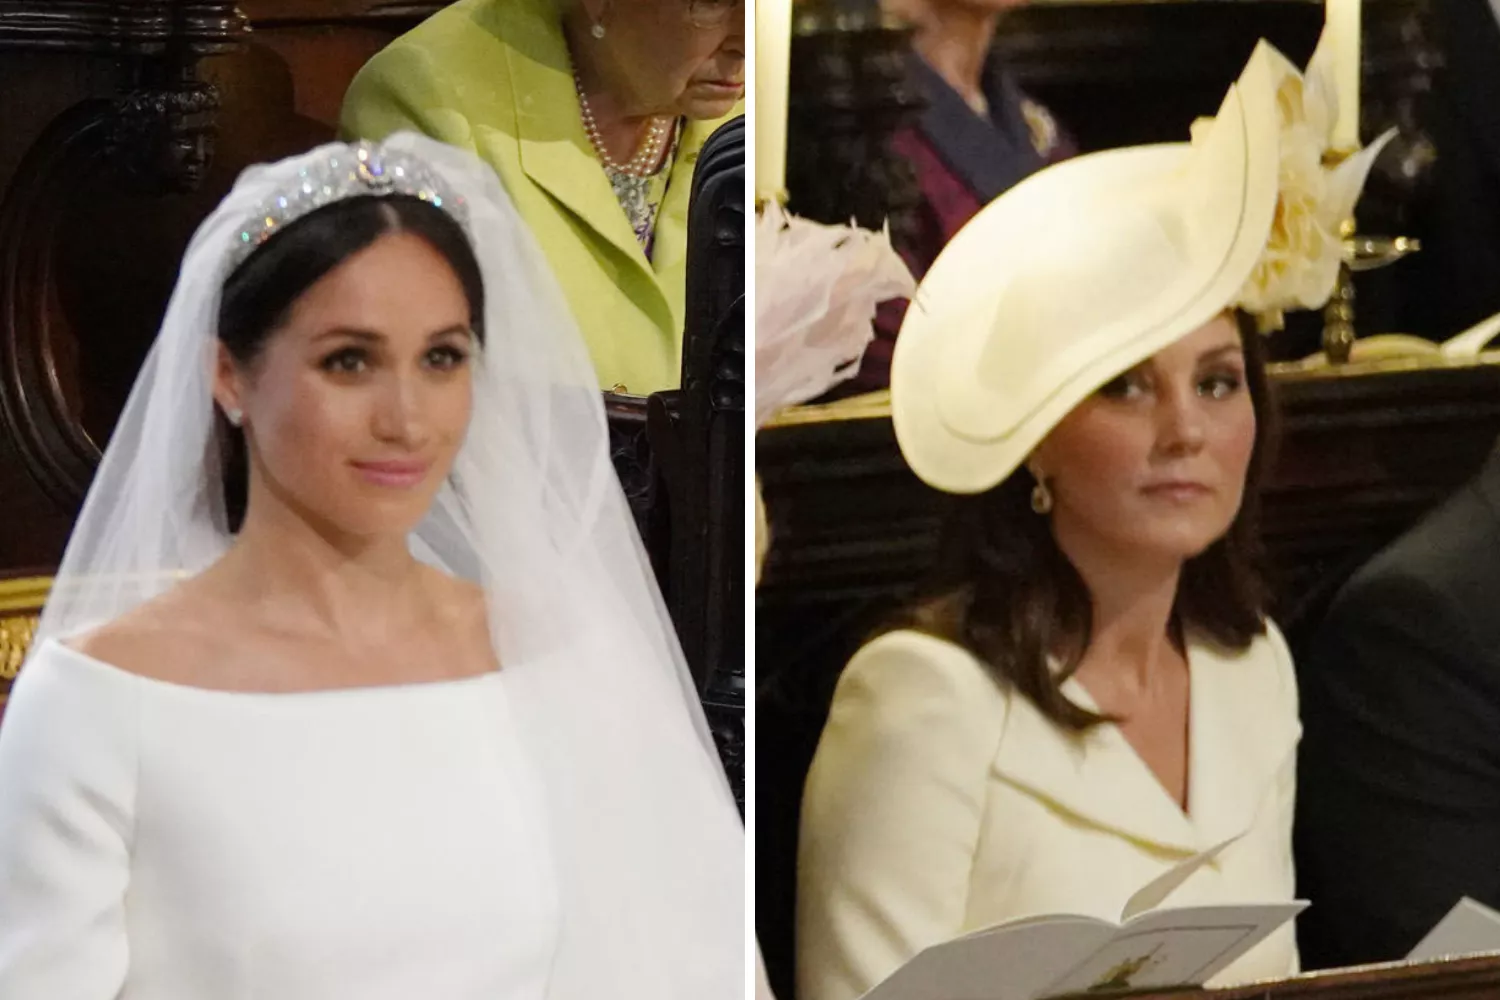 https://d.newsweek.com/en/full/2233981/meghan-markle-kate-middleton-royal-wedding.webp